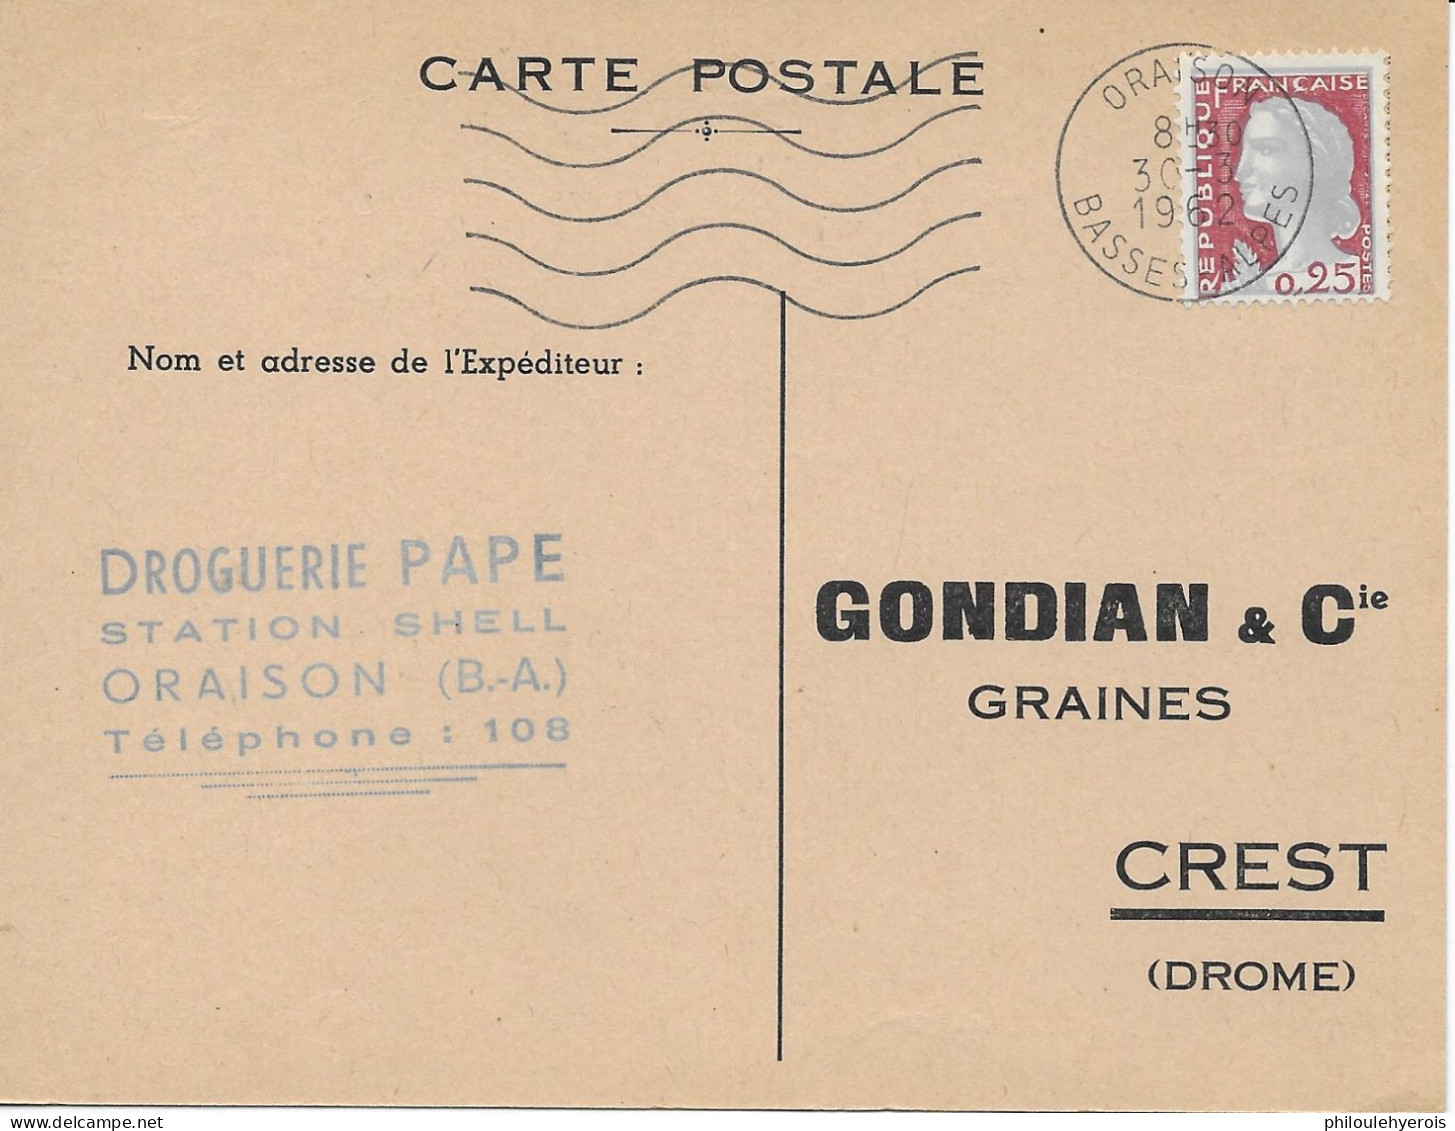 ORAISON (04) C.P. Droguerie PAPE Station SHELL 1962 Pour CREST (26) Graines Gondian - Automobile